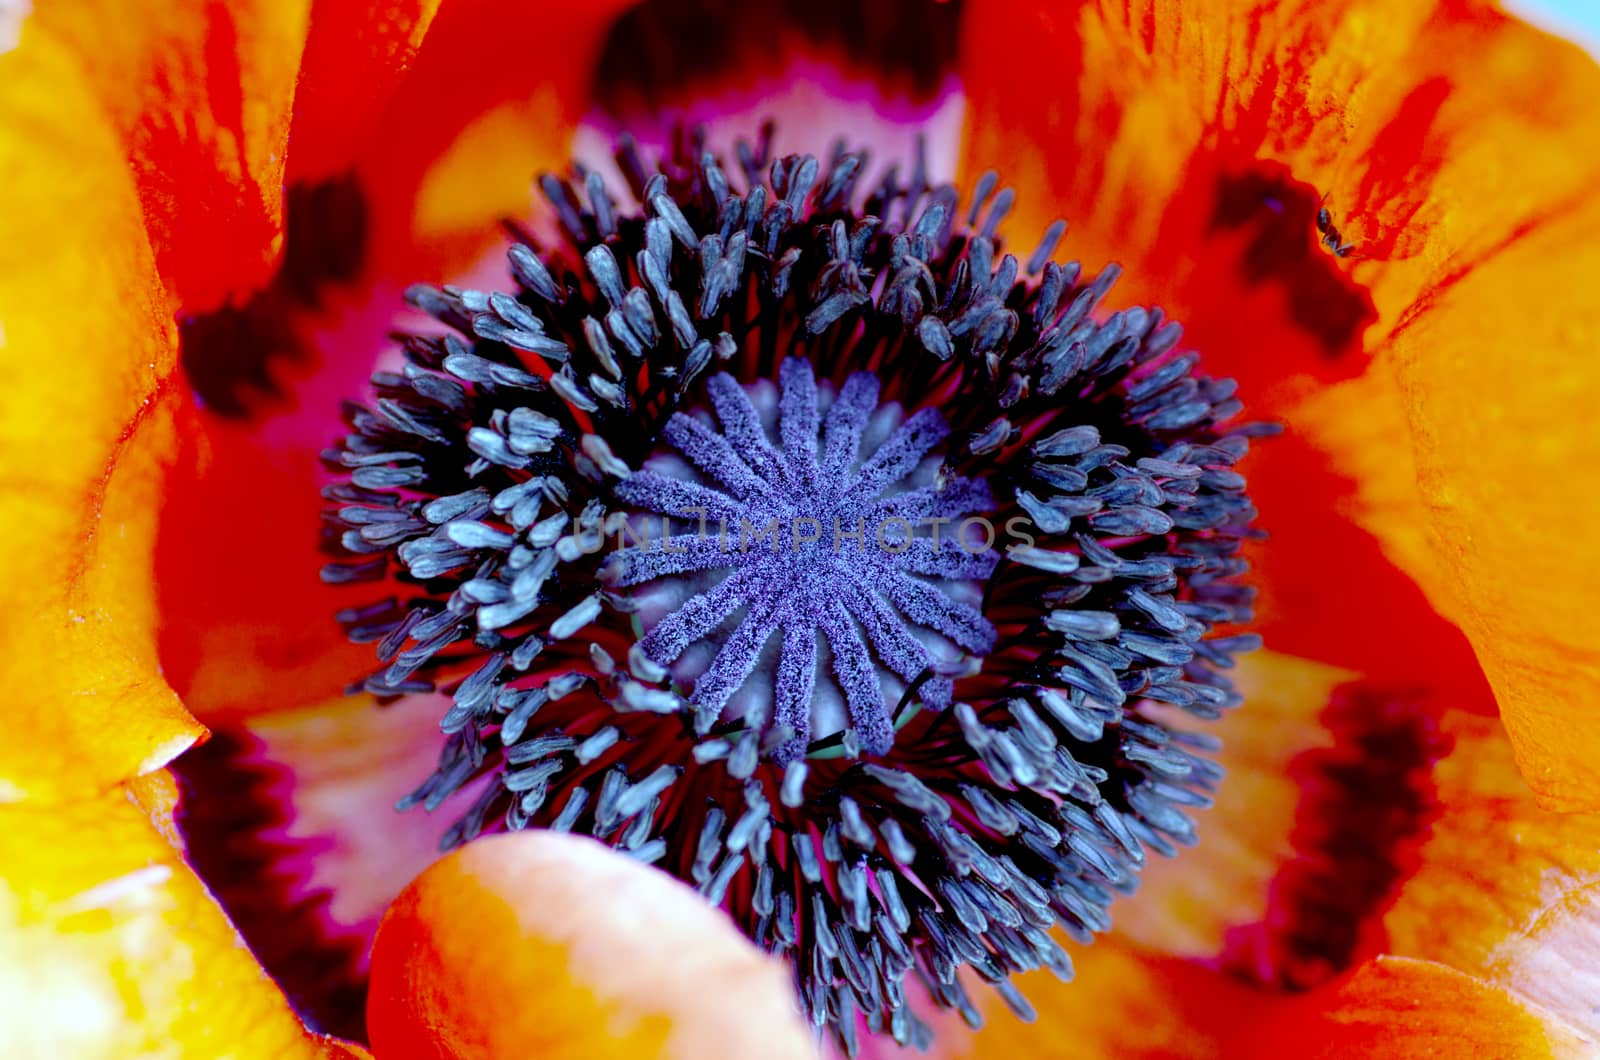 poppy heart macro. Shot red poppy close-up